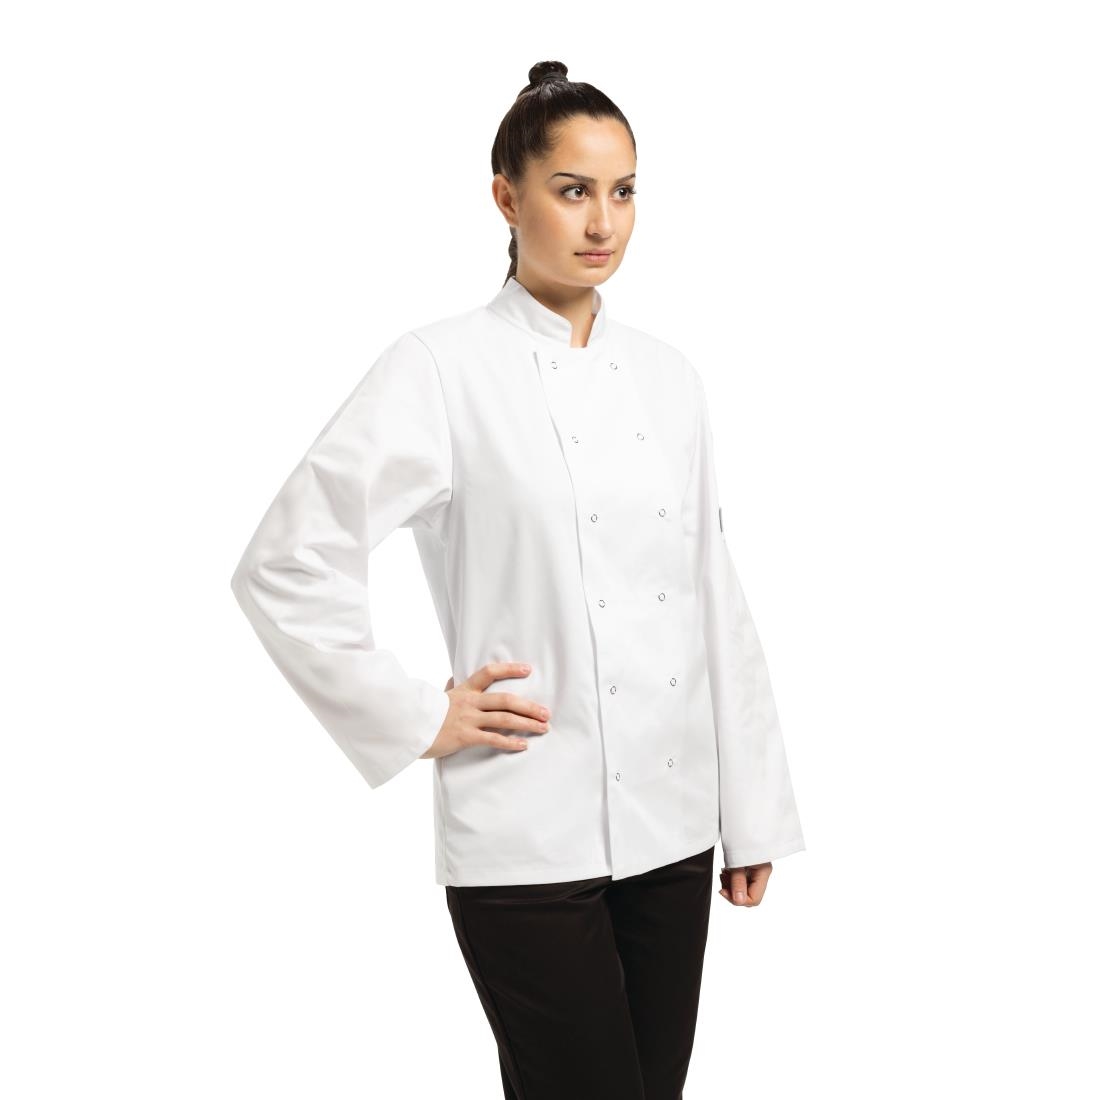 Whites Vegas Unisex Chefs Jacket Long Sleeve White 4XL